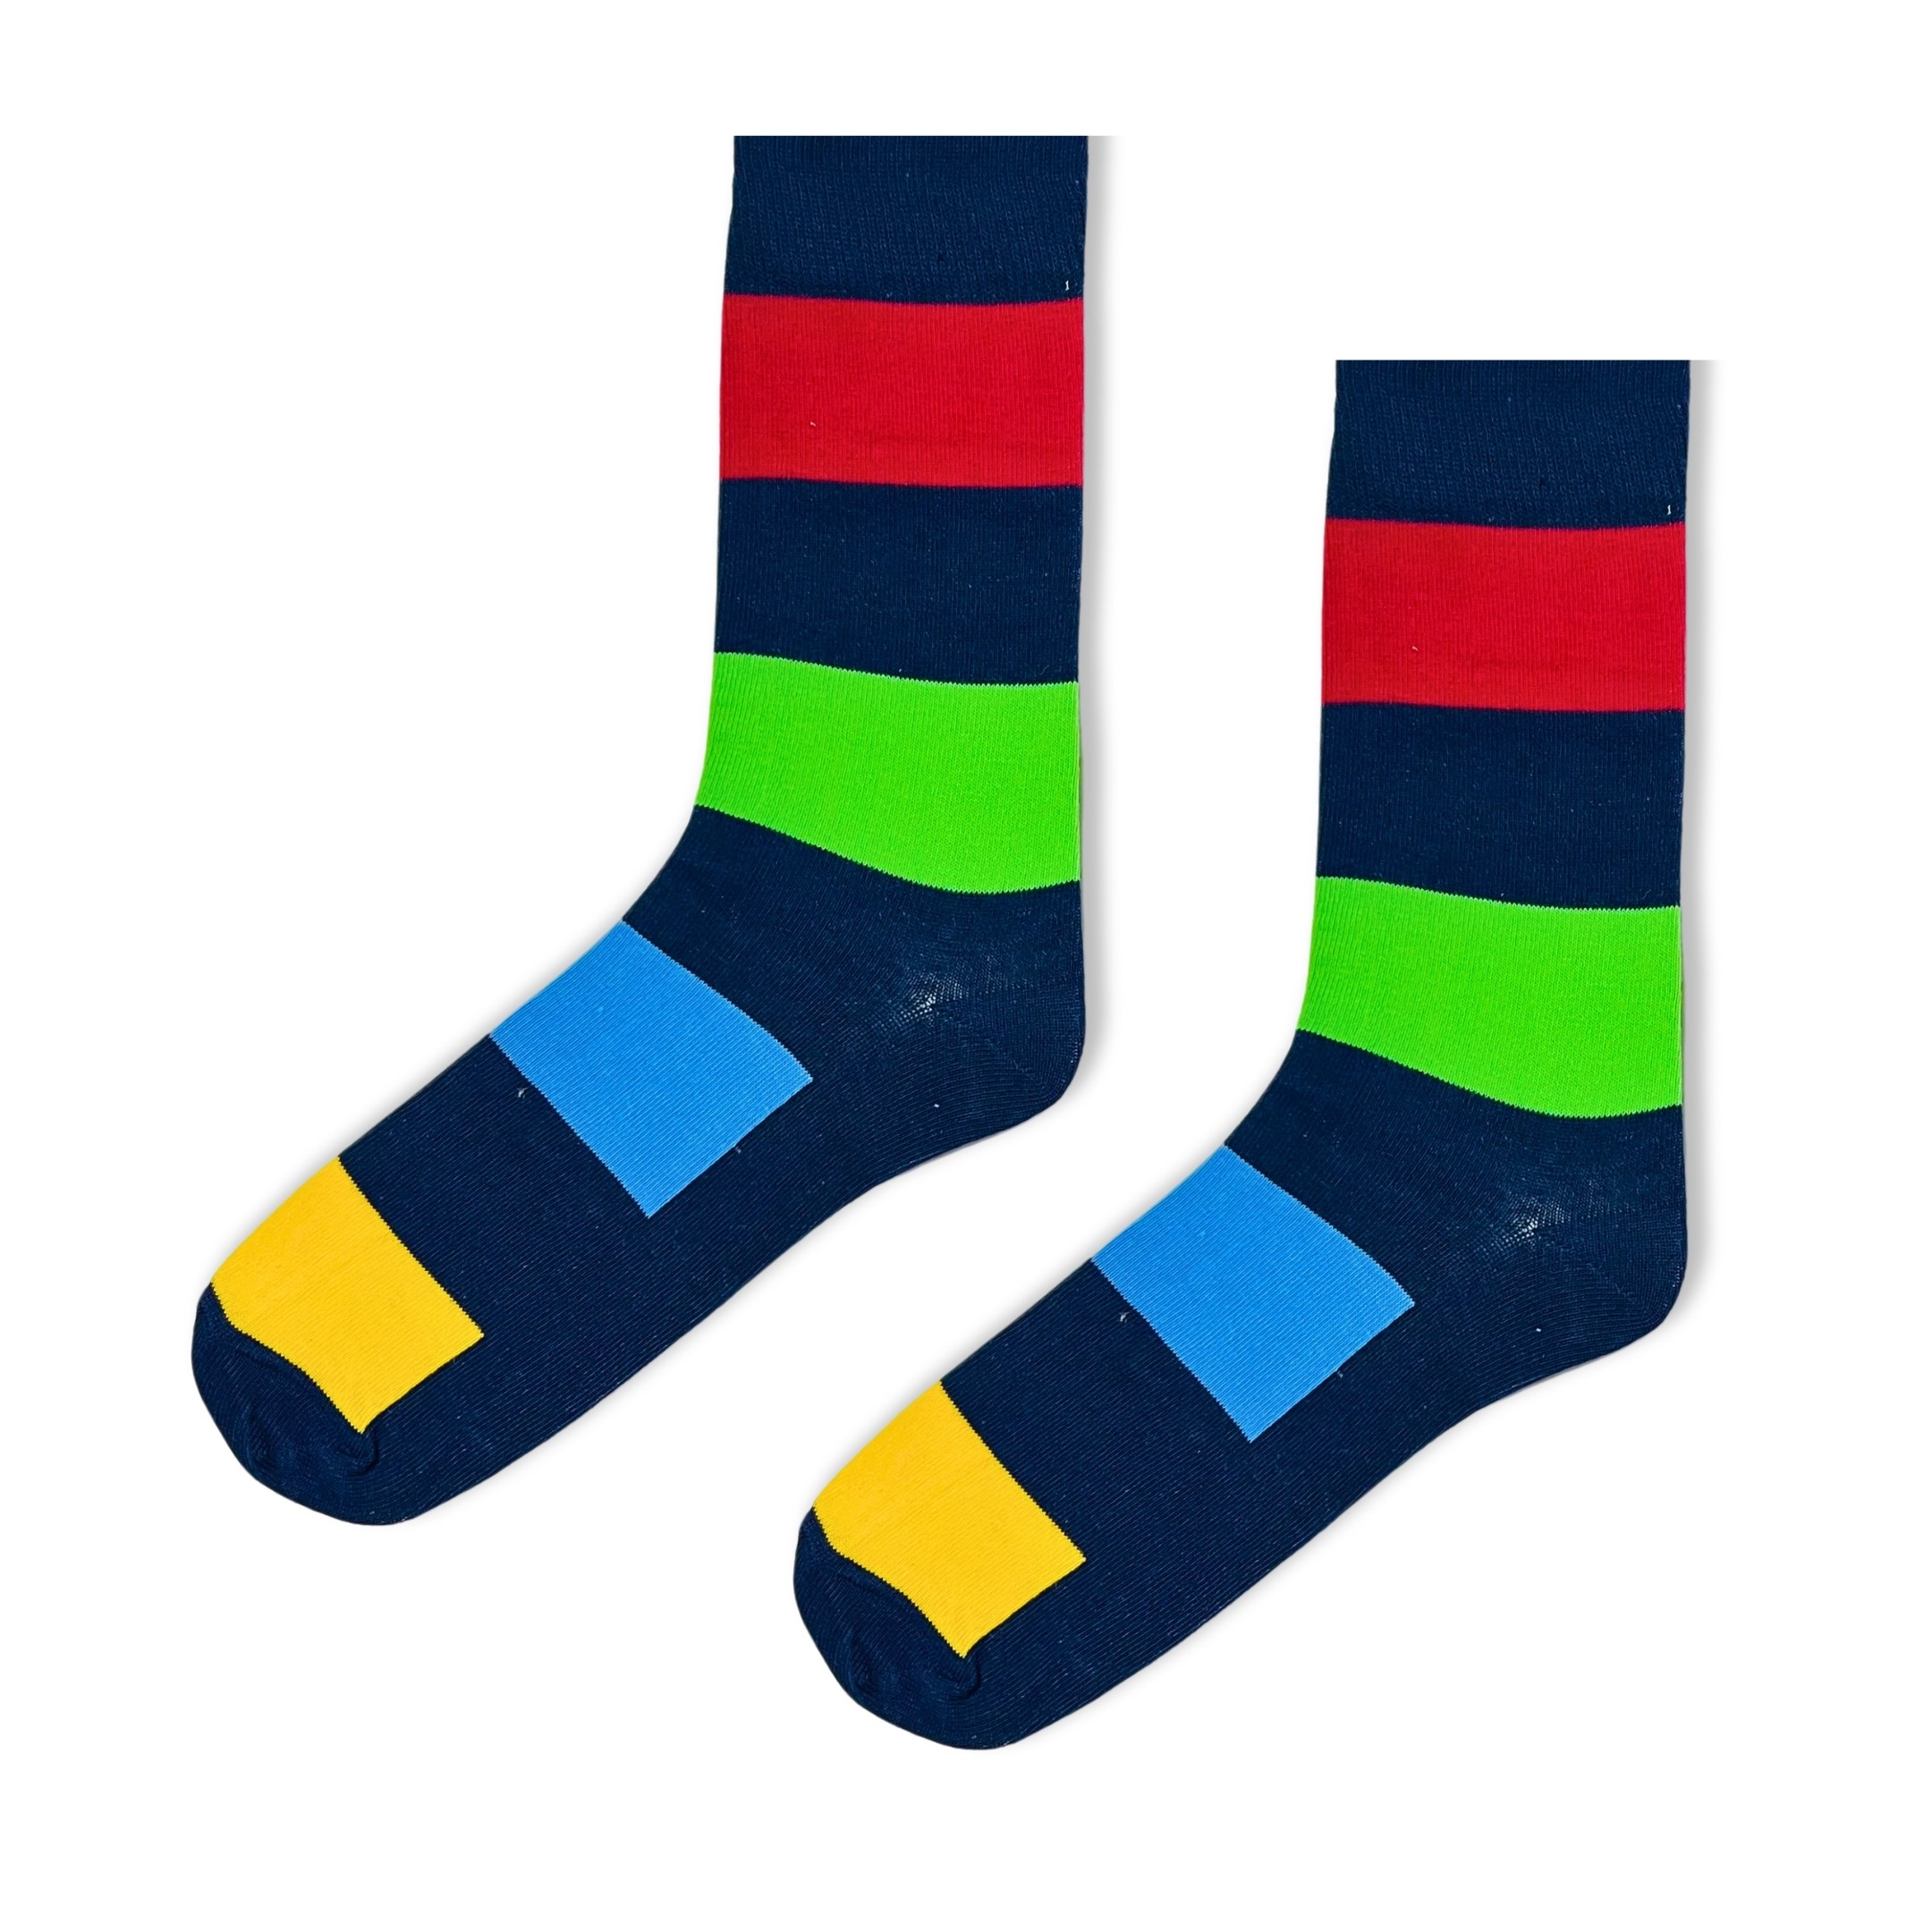 Düz Çizgili Şekilli Rengarenk Erkek Soket Çorap (42-47)